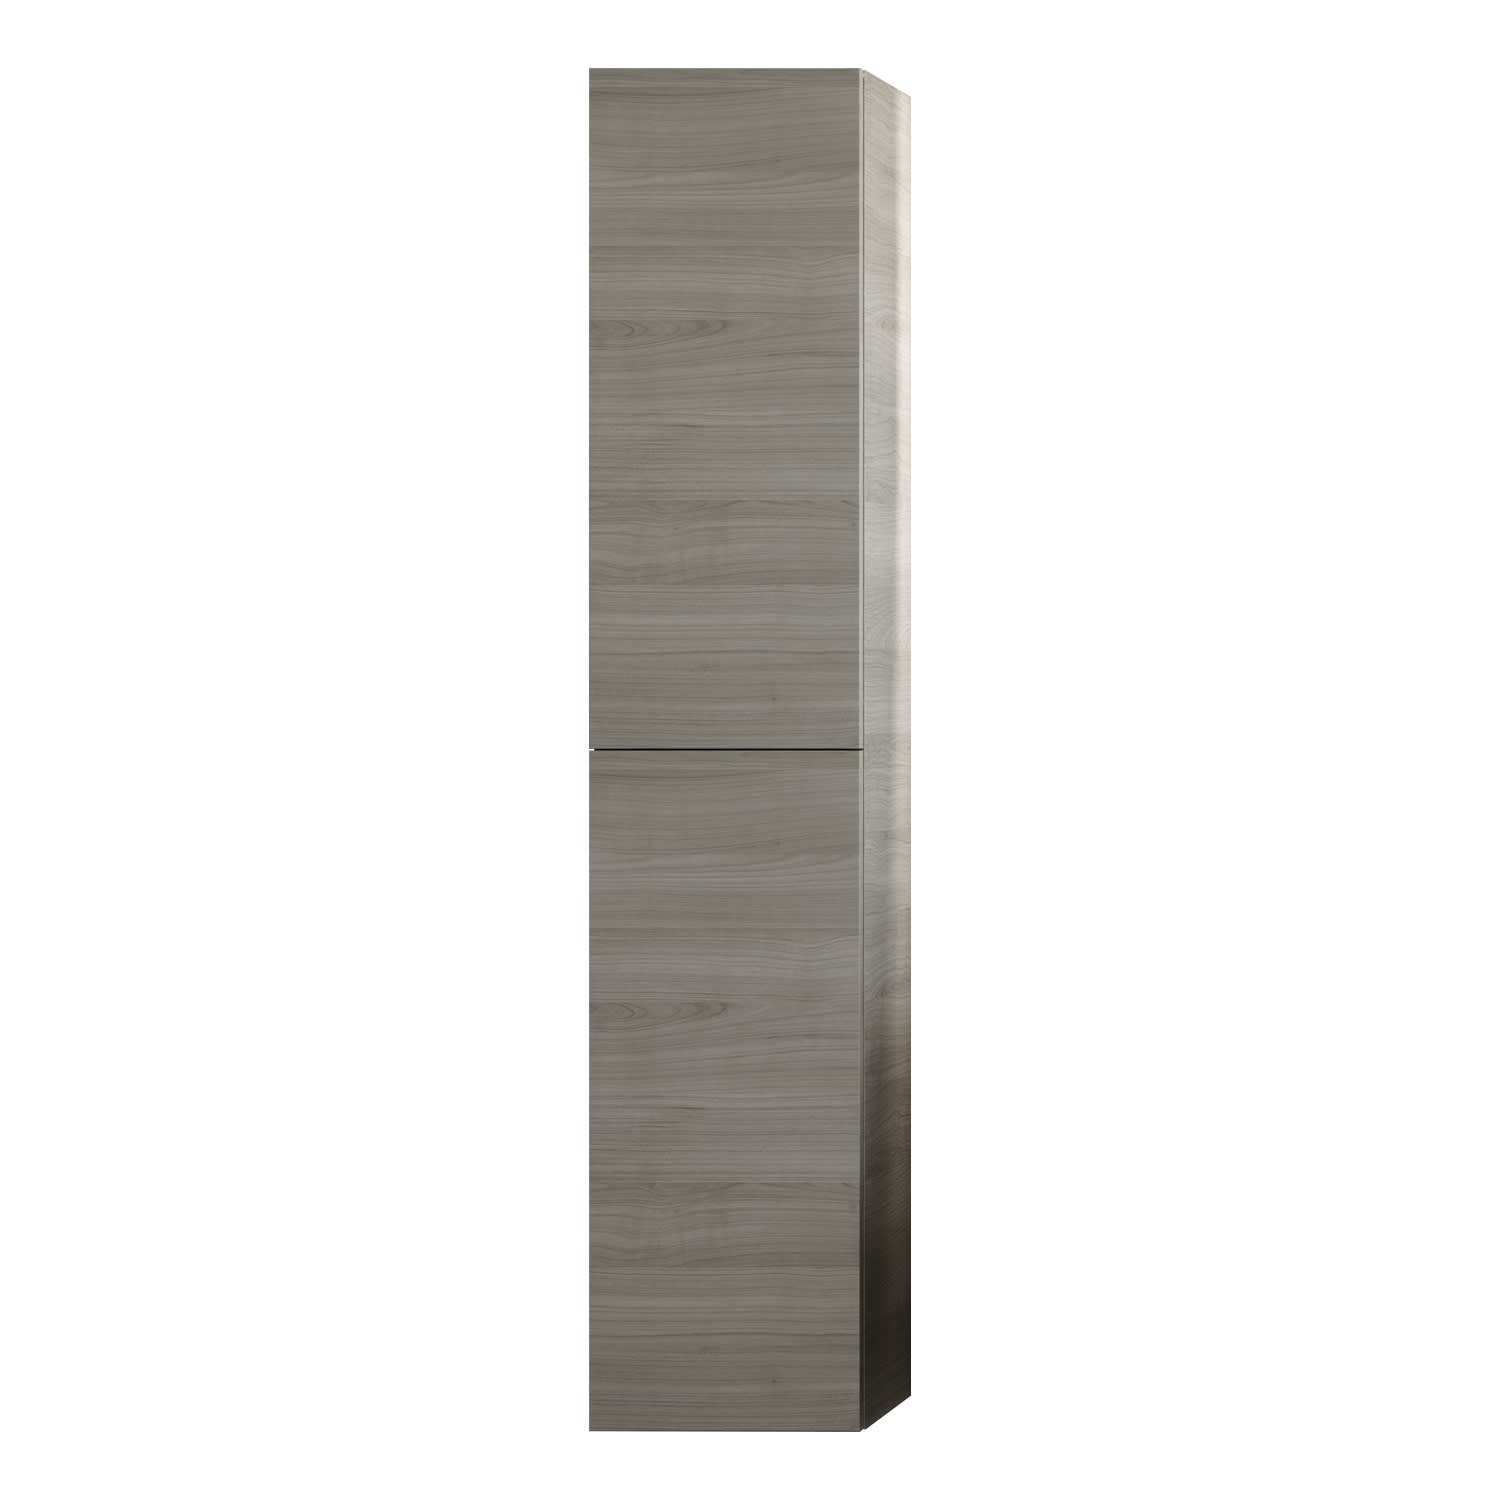 Columna de baño colgar CARMEN suspendida 70 x 50 x 22 cm ⋆ VAROBATH | Un  baño increíble